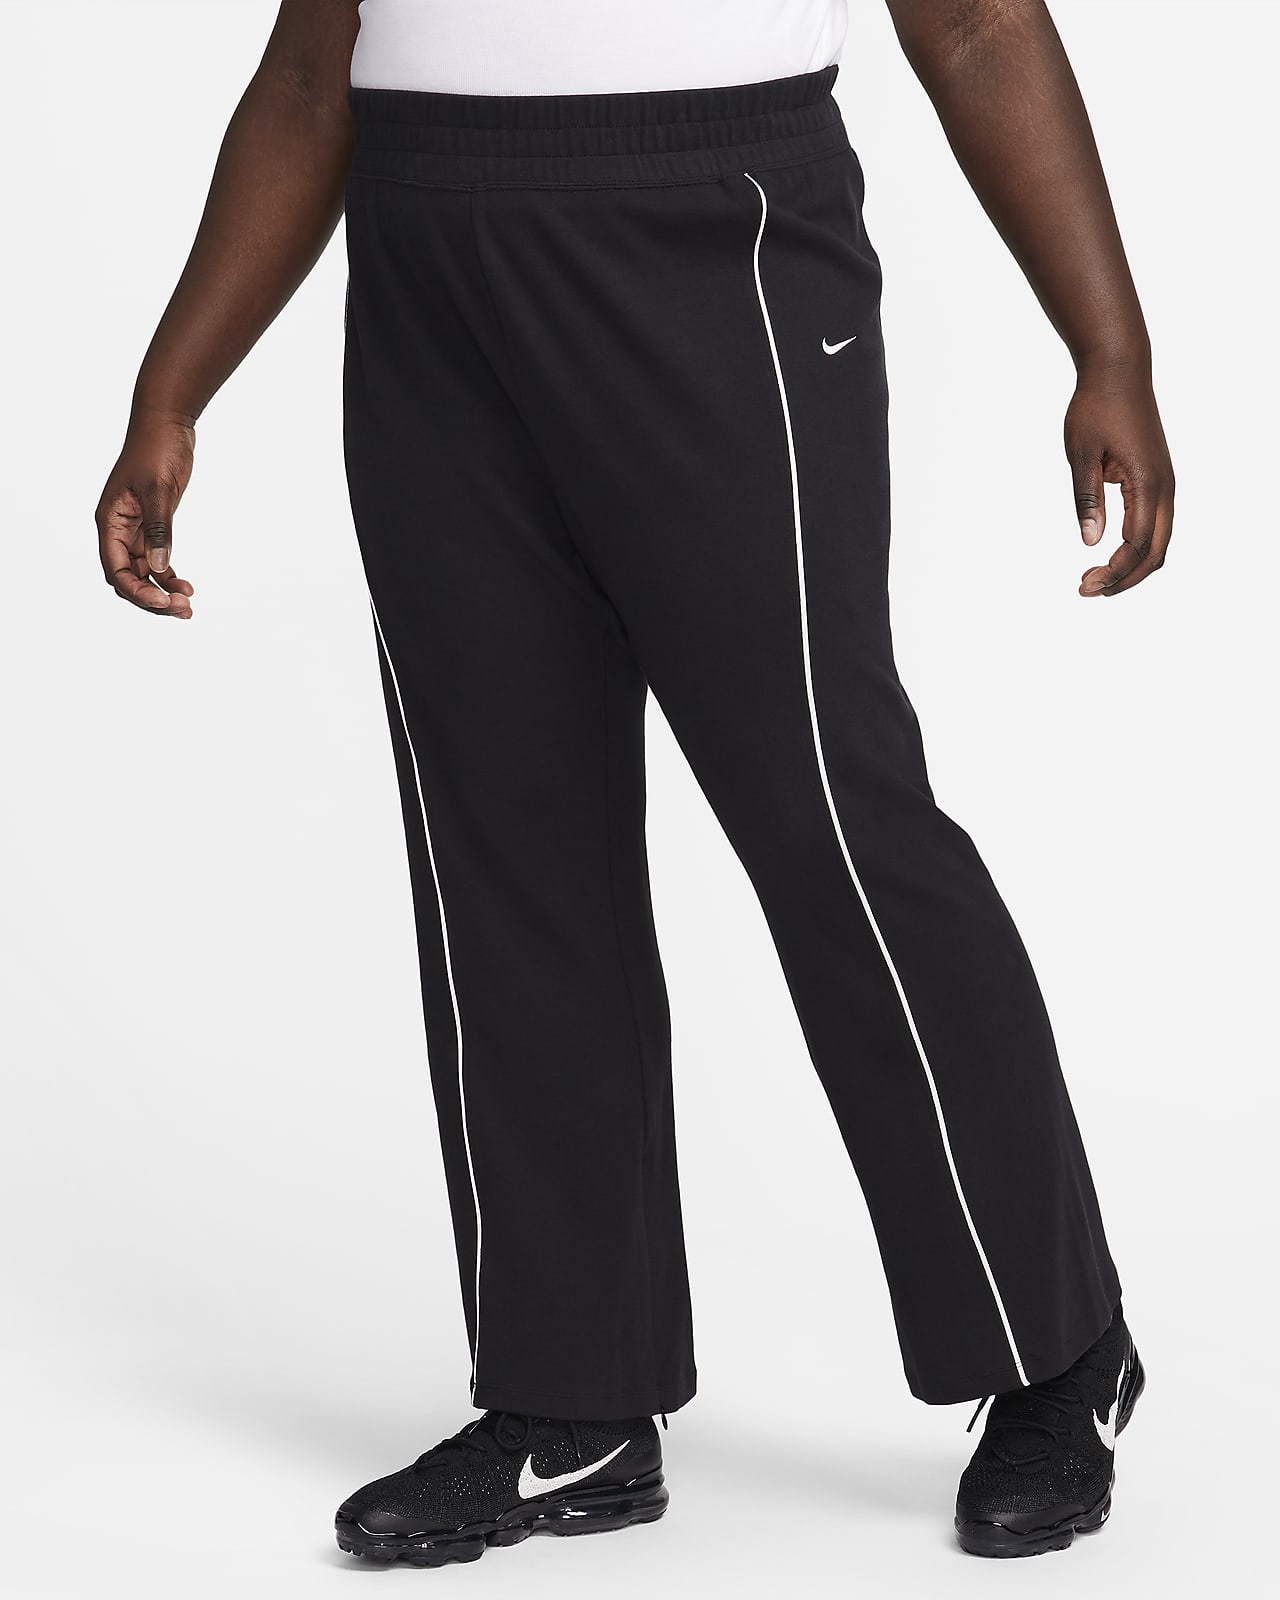 Nike Sportswear Women's Trousers. Nike LU